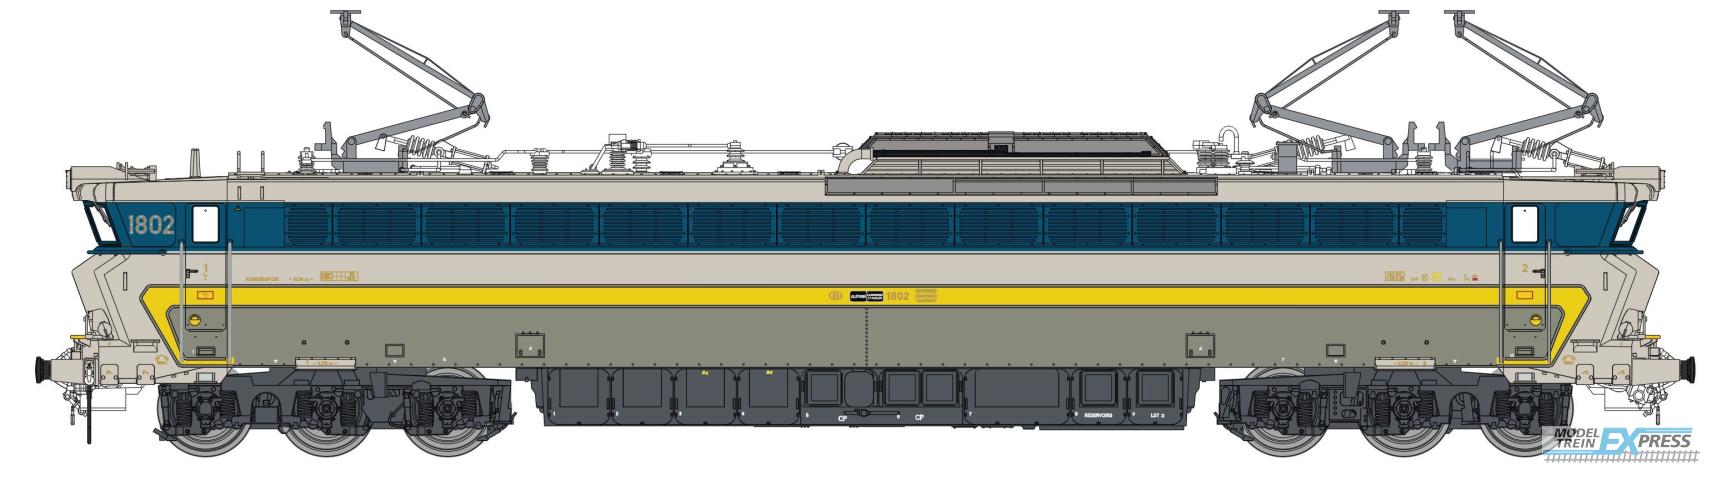 LS Models 12051S 1802, grijs/inox, gele en licht blauwe band, nieuwe kolpampen  /  Ep. IVB  /  SNCB  /  HO  /  DC SOUND  /  1 P.